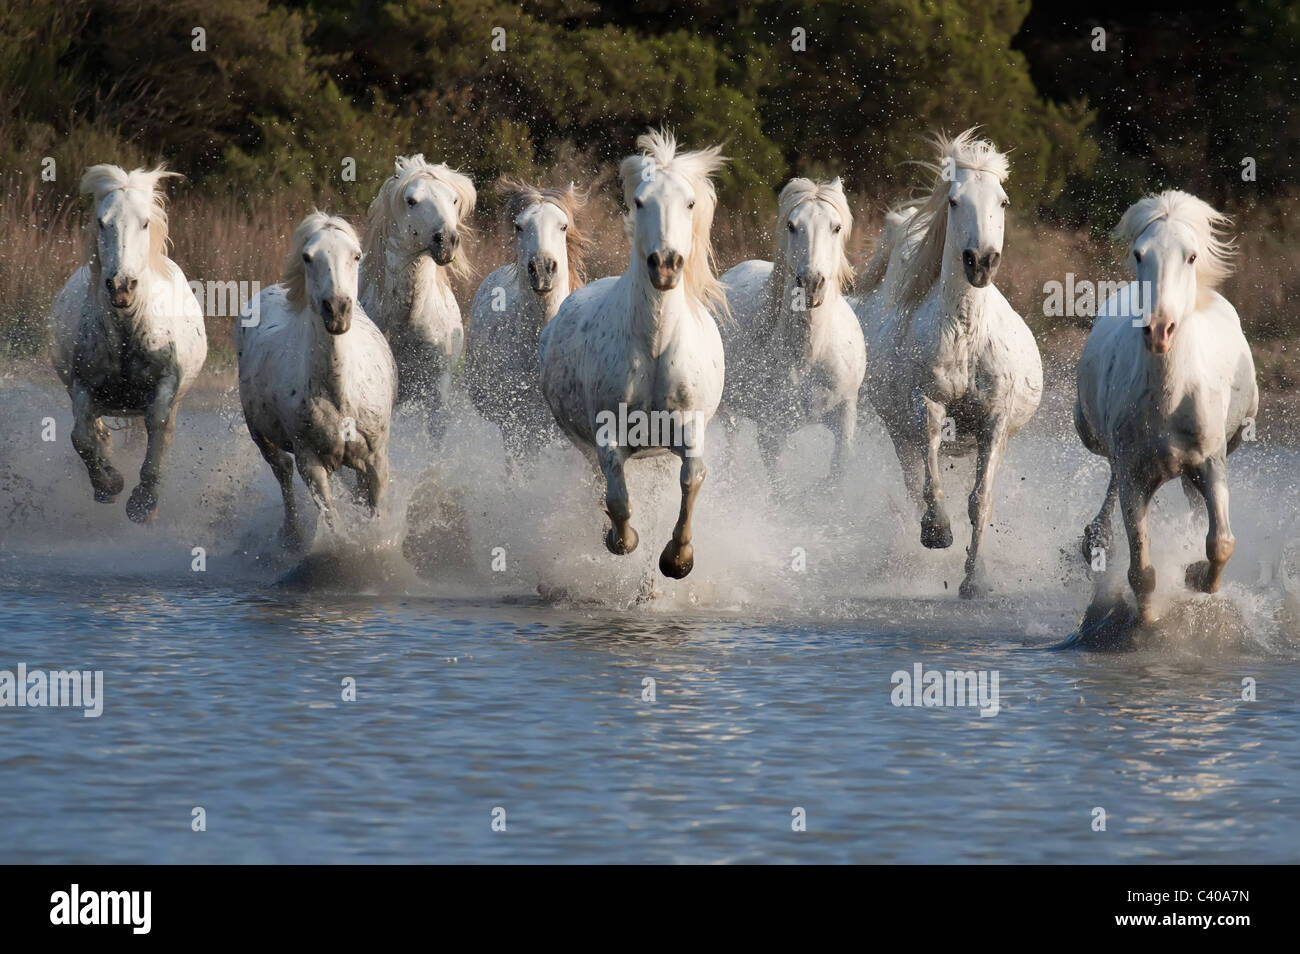 Course de chevaux dans un étang en Camargue du sud de la France Banque D'Images